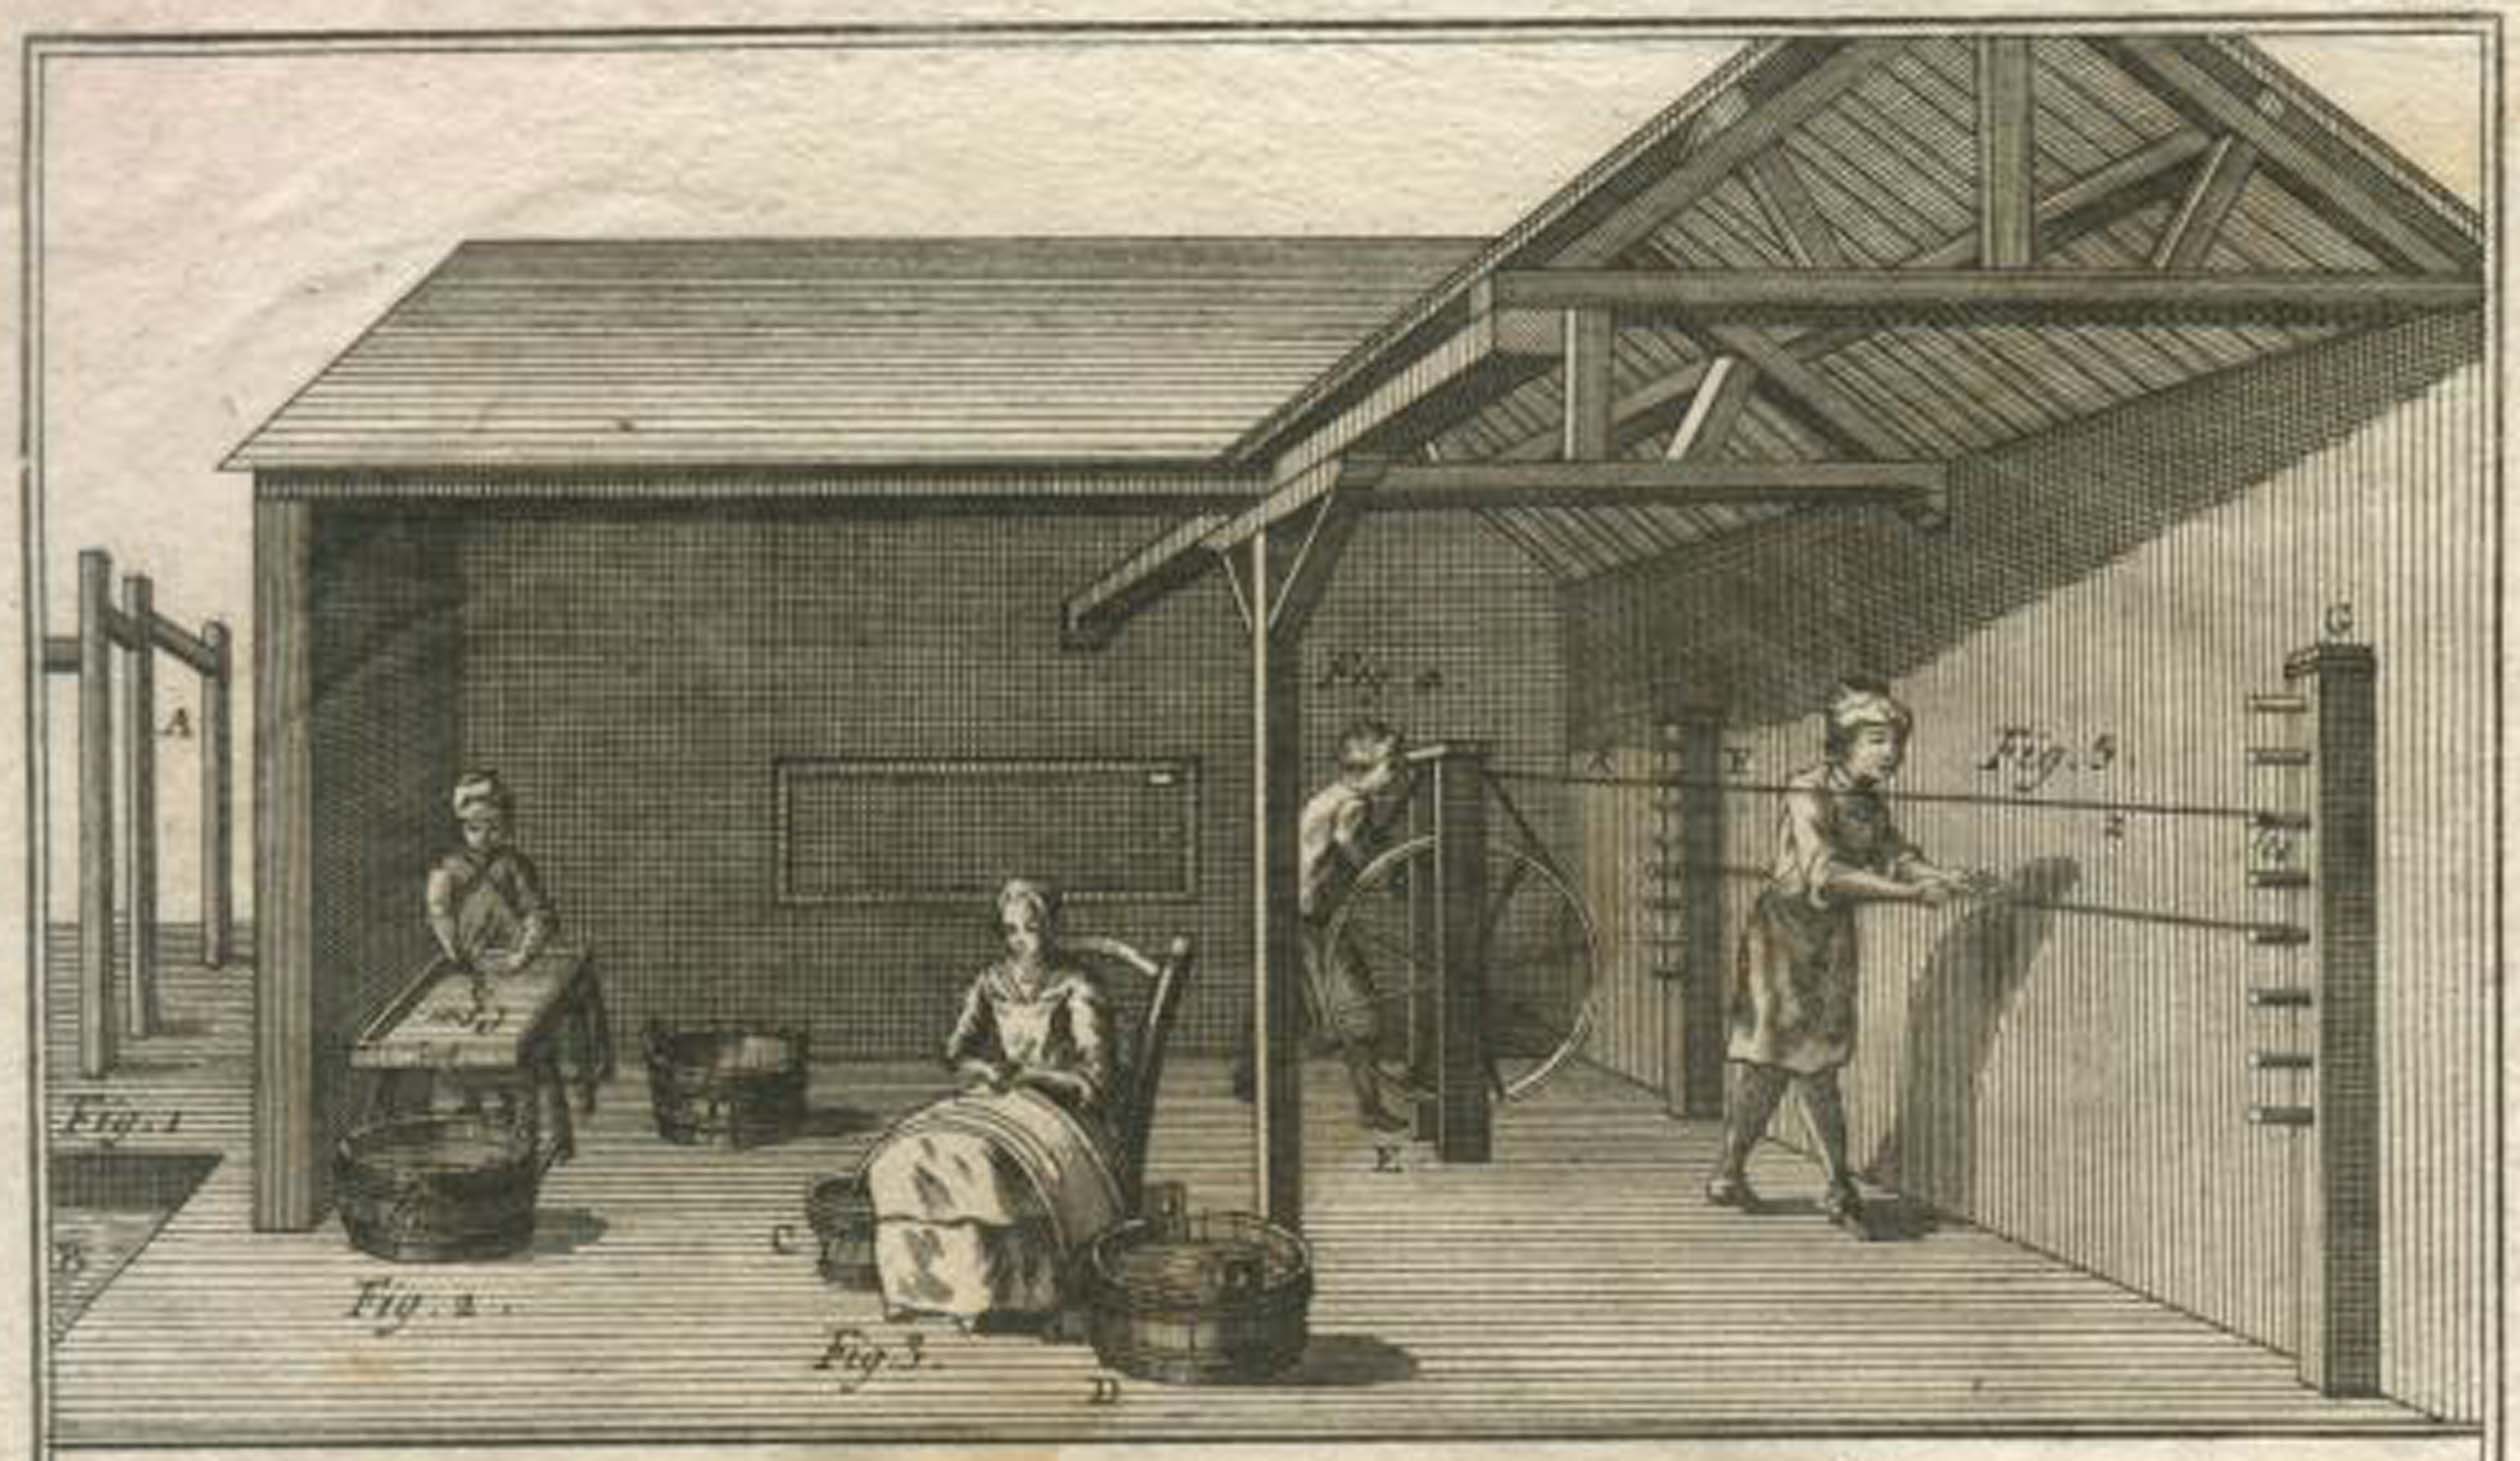 Fasi della lavorazione delle corde in budello nell'Encyclopédie di Diderot-D'Alembert